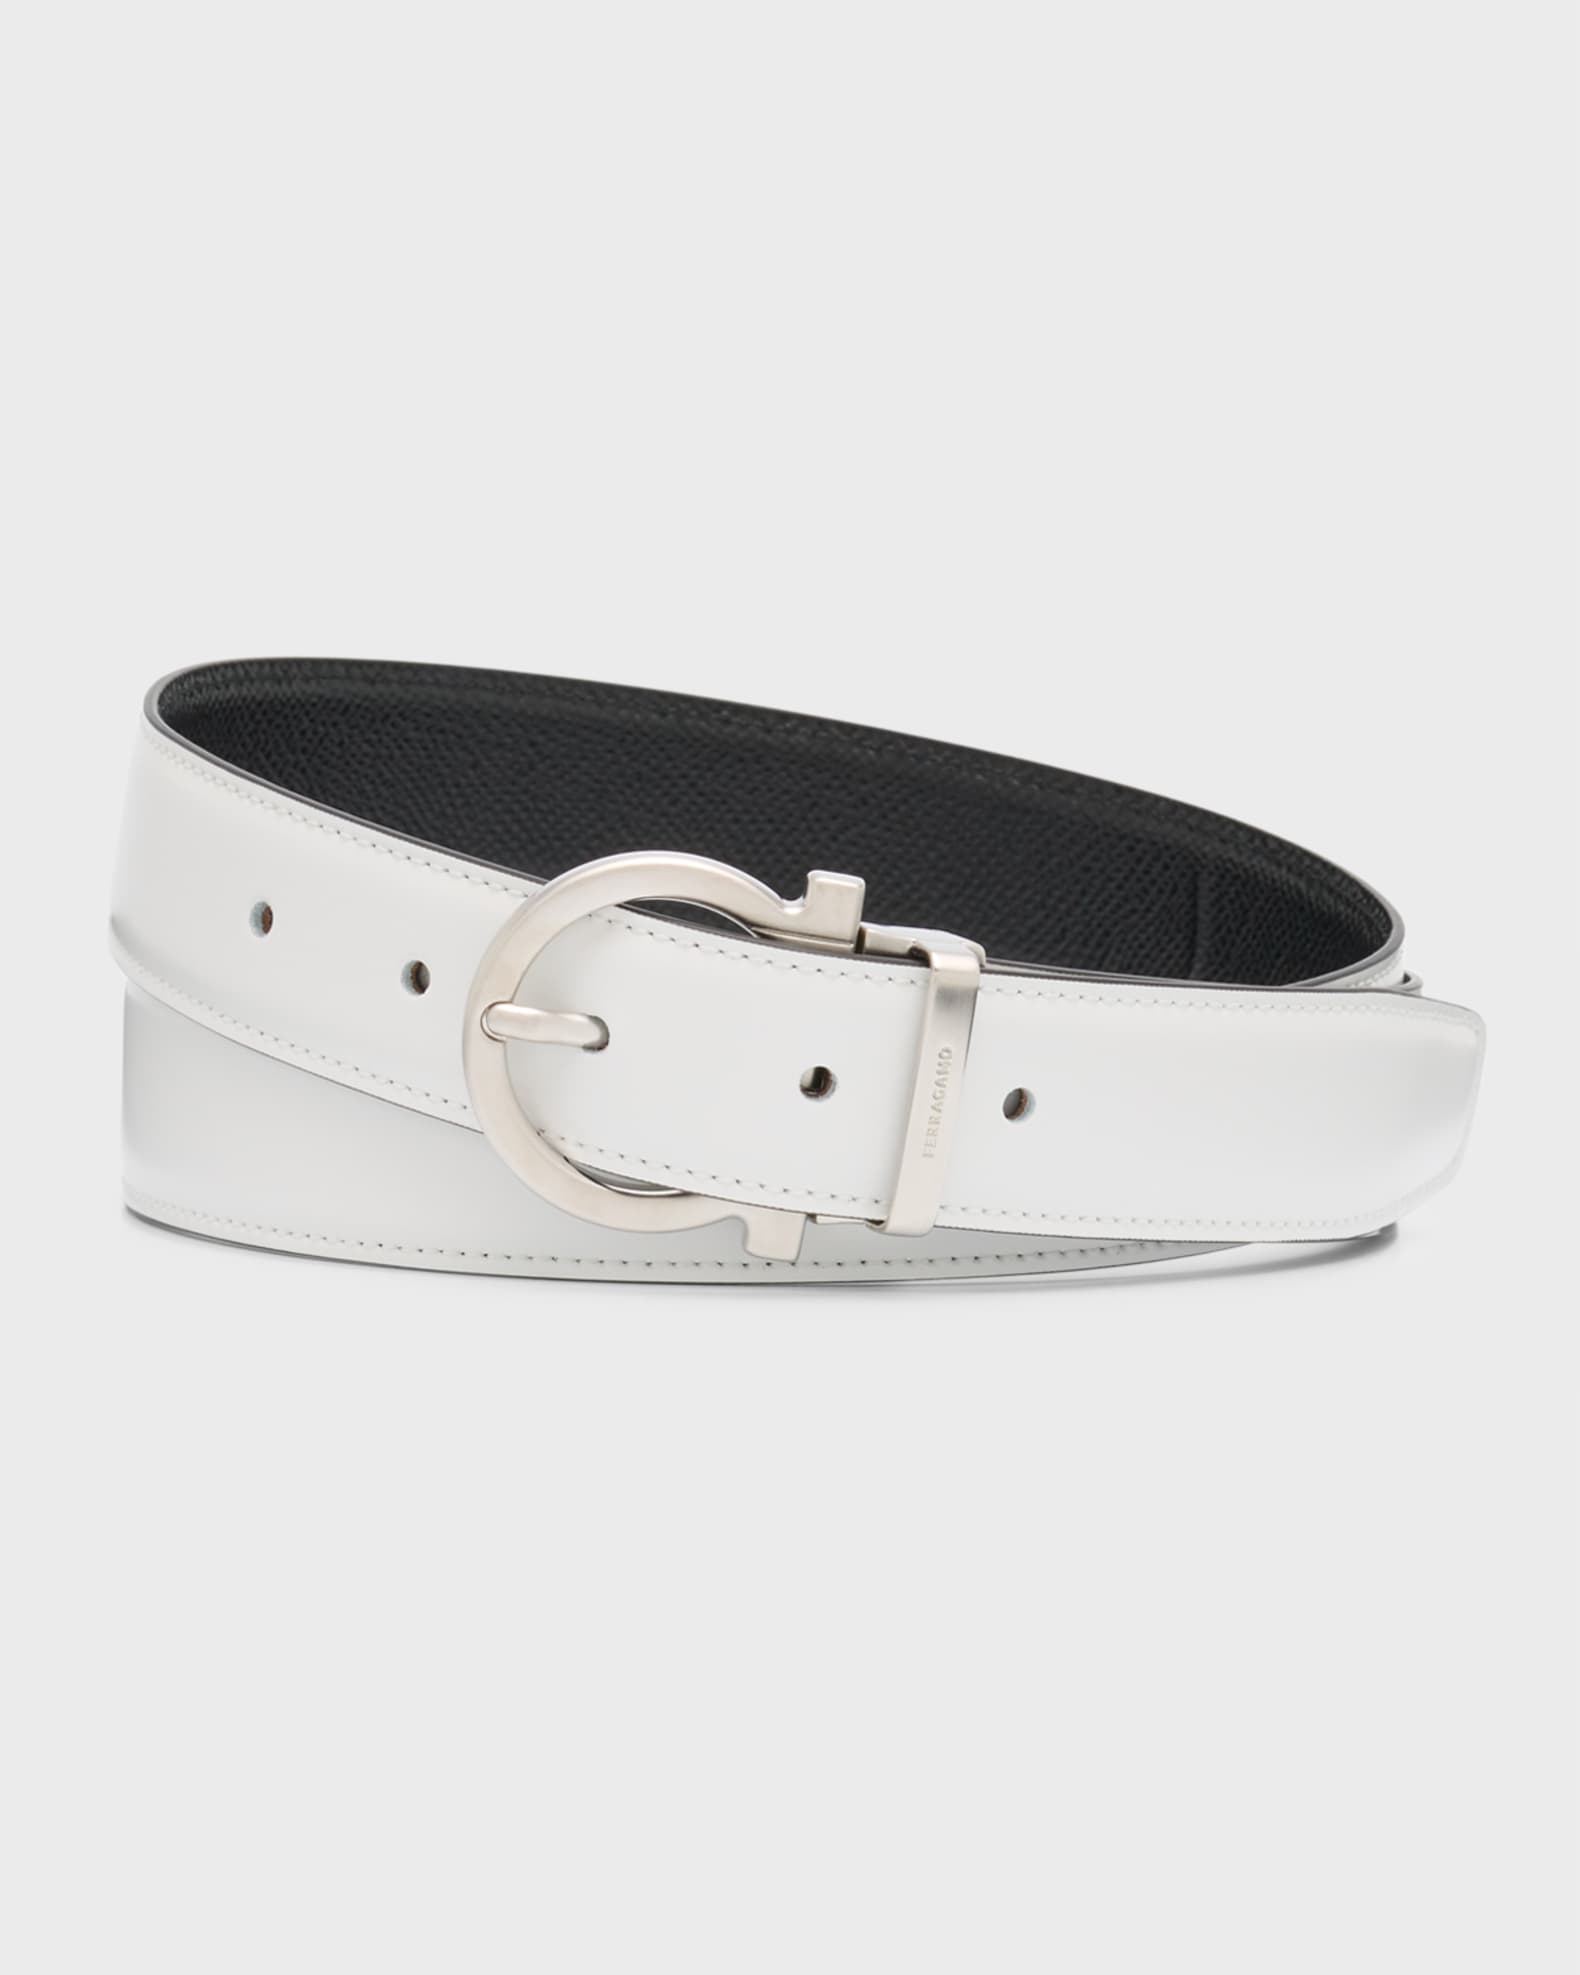 Ferragamo, Grained leather silver buckle reversible belt